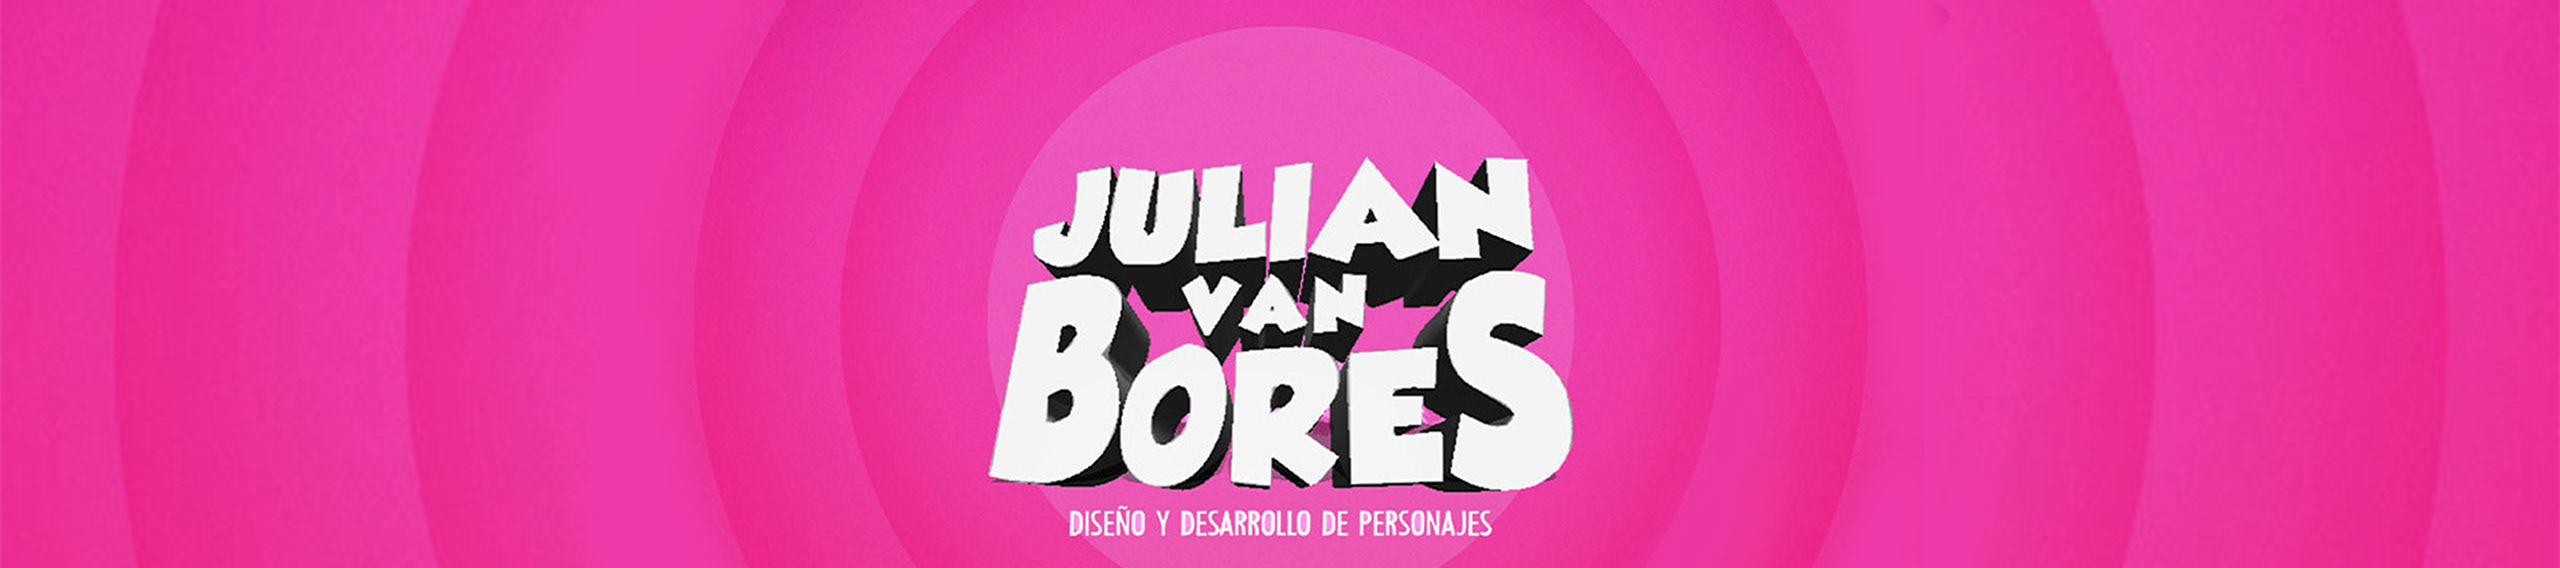 Julian Van Bores's profile banner